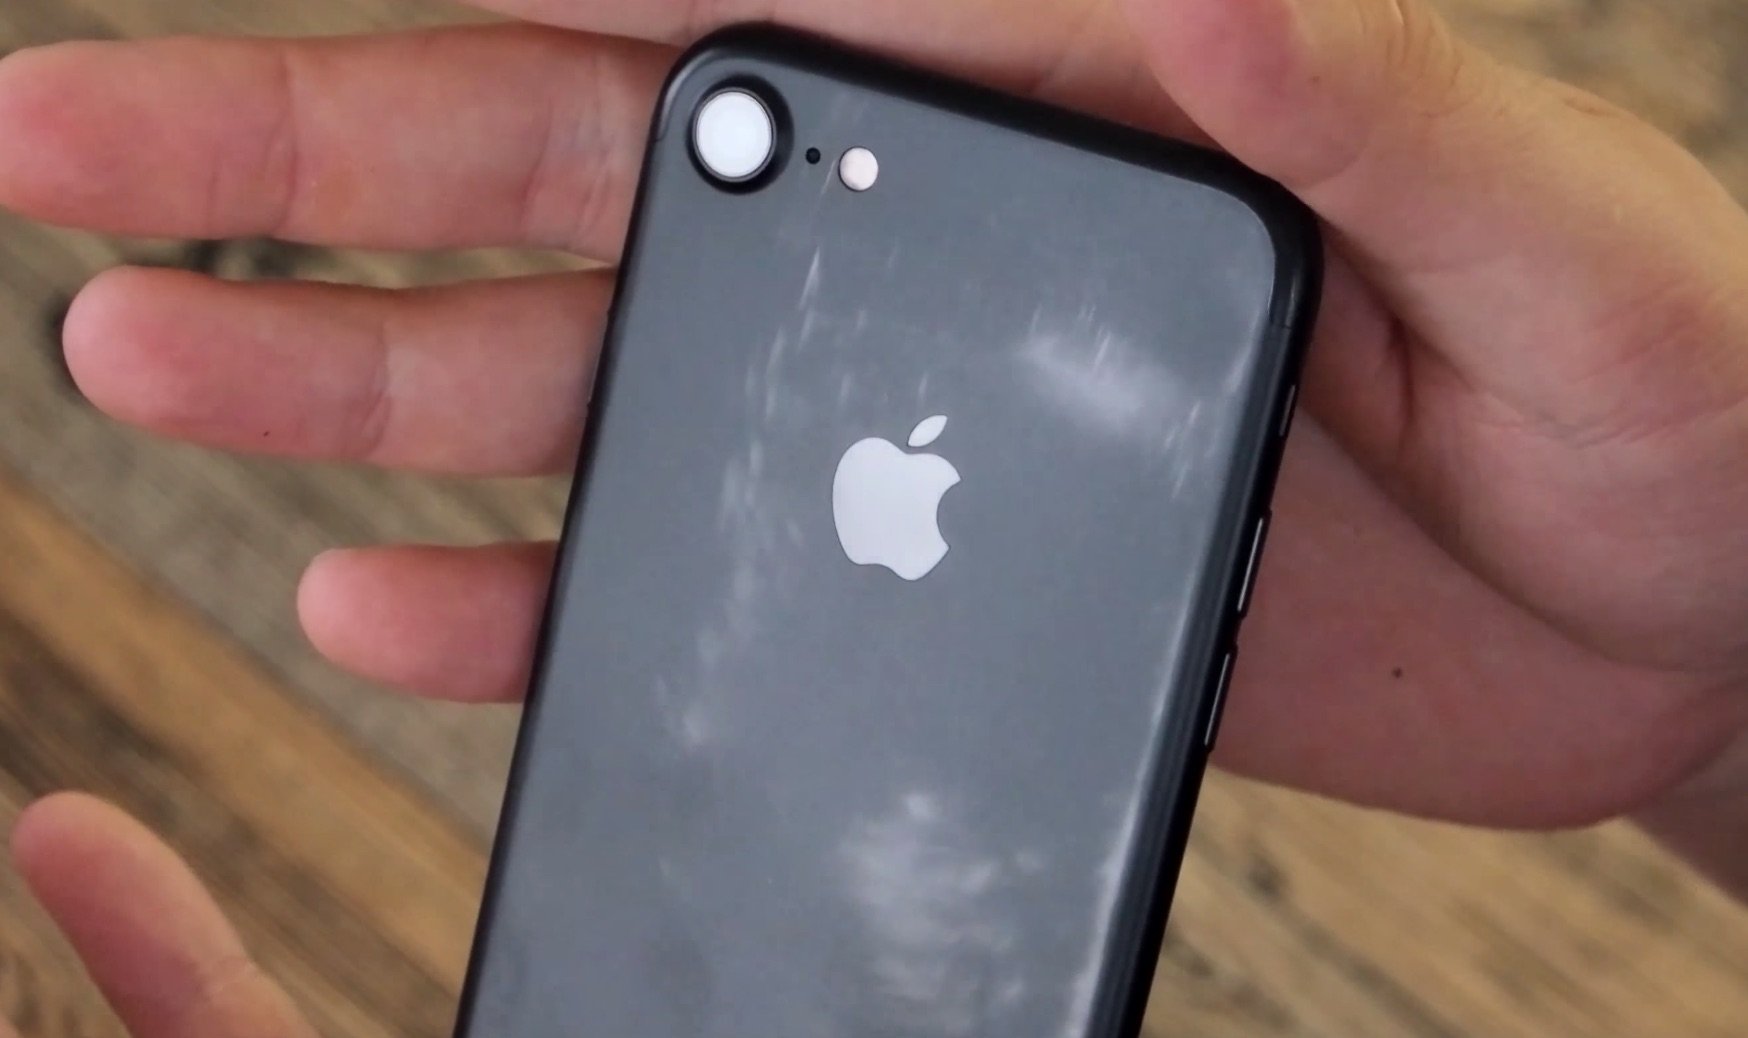 Neue Farbprobleme: schwarzes iPhone 7 verliert Matt-Effekt durch Nutzung? 4